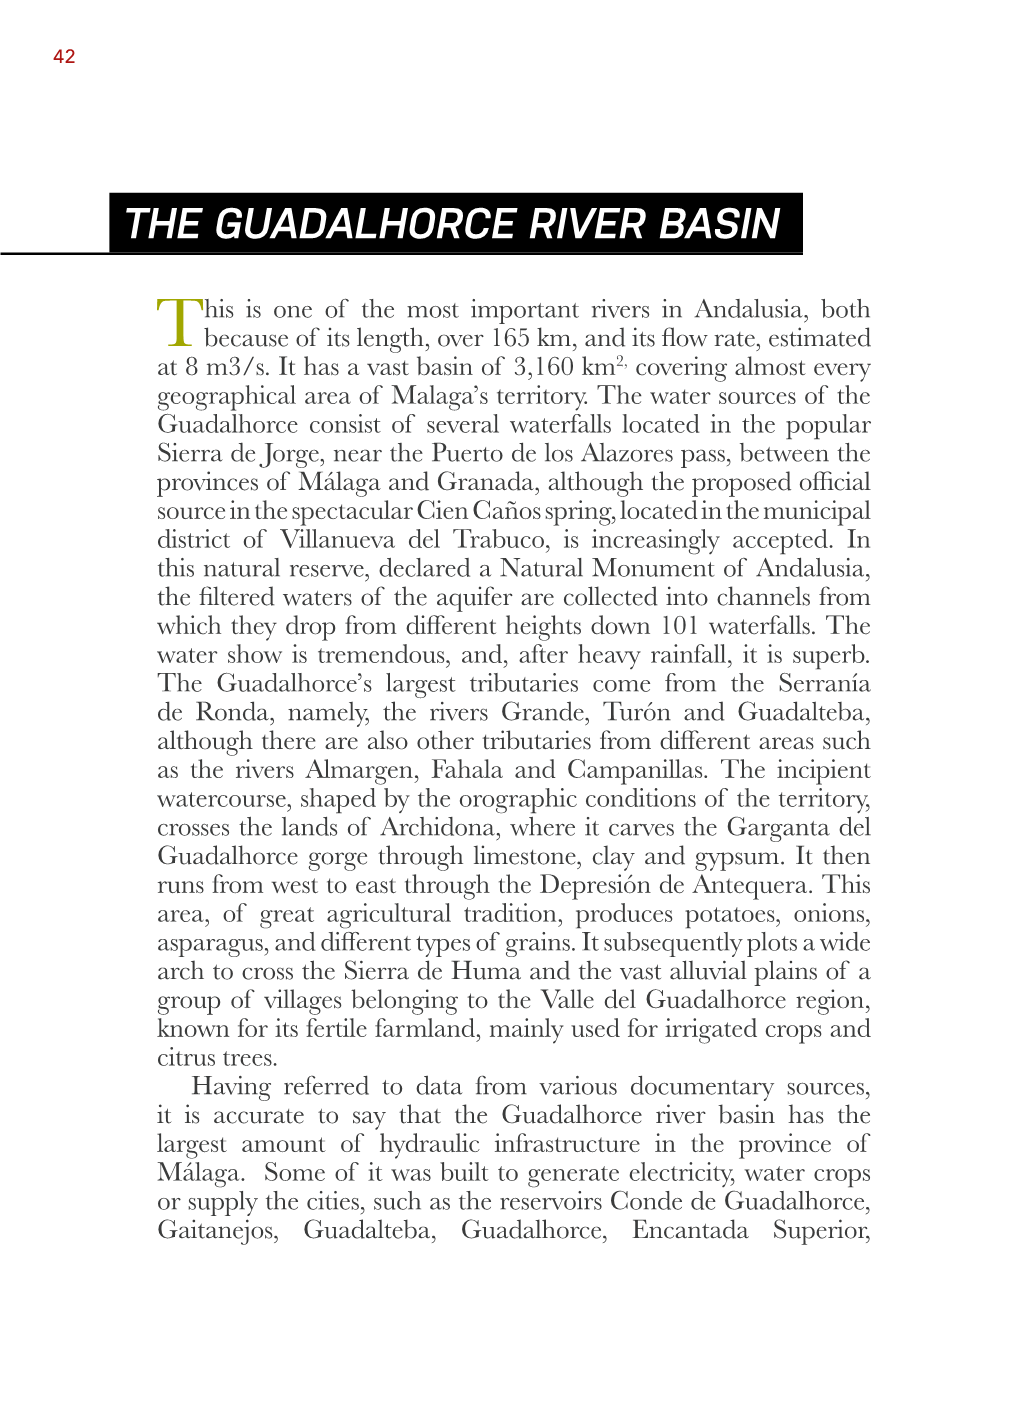 The Guadalhorce River Basin